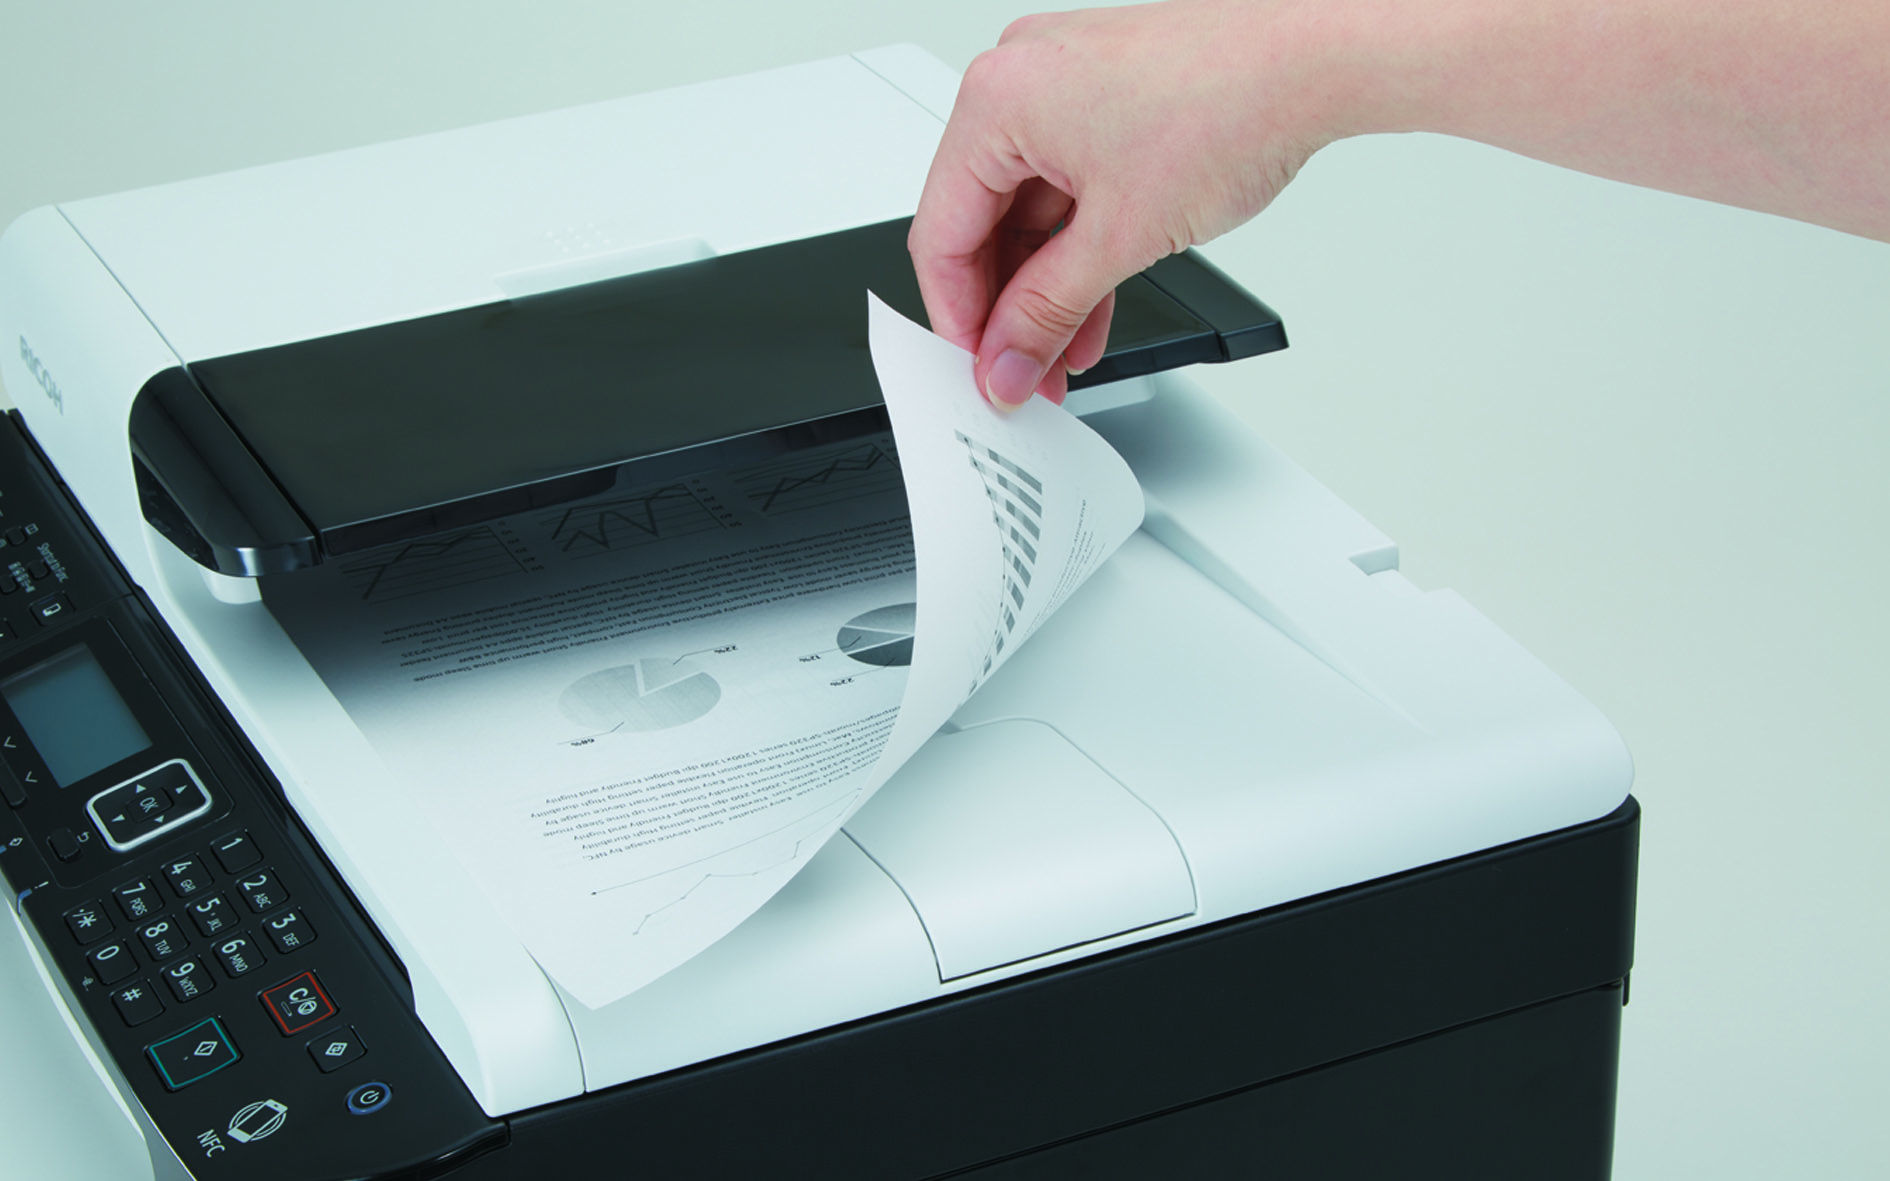 Как правильно распечатать фотографии на принтере дома